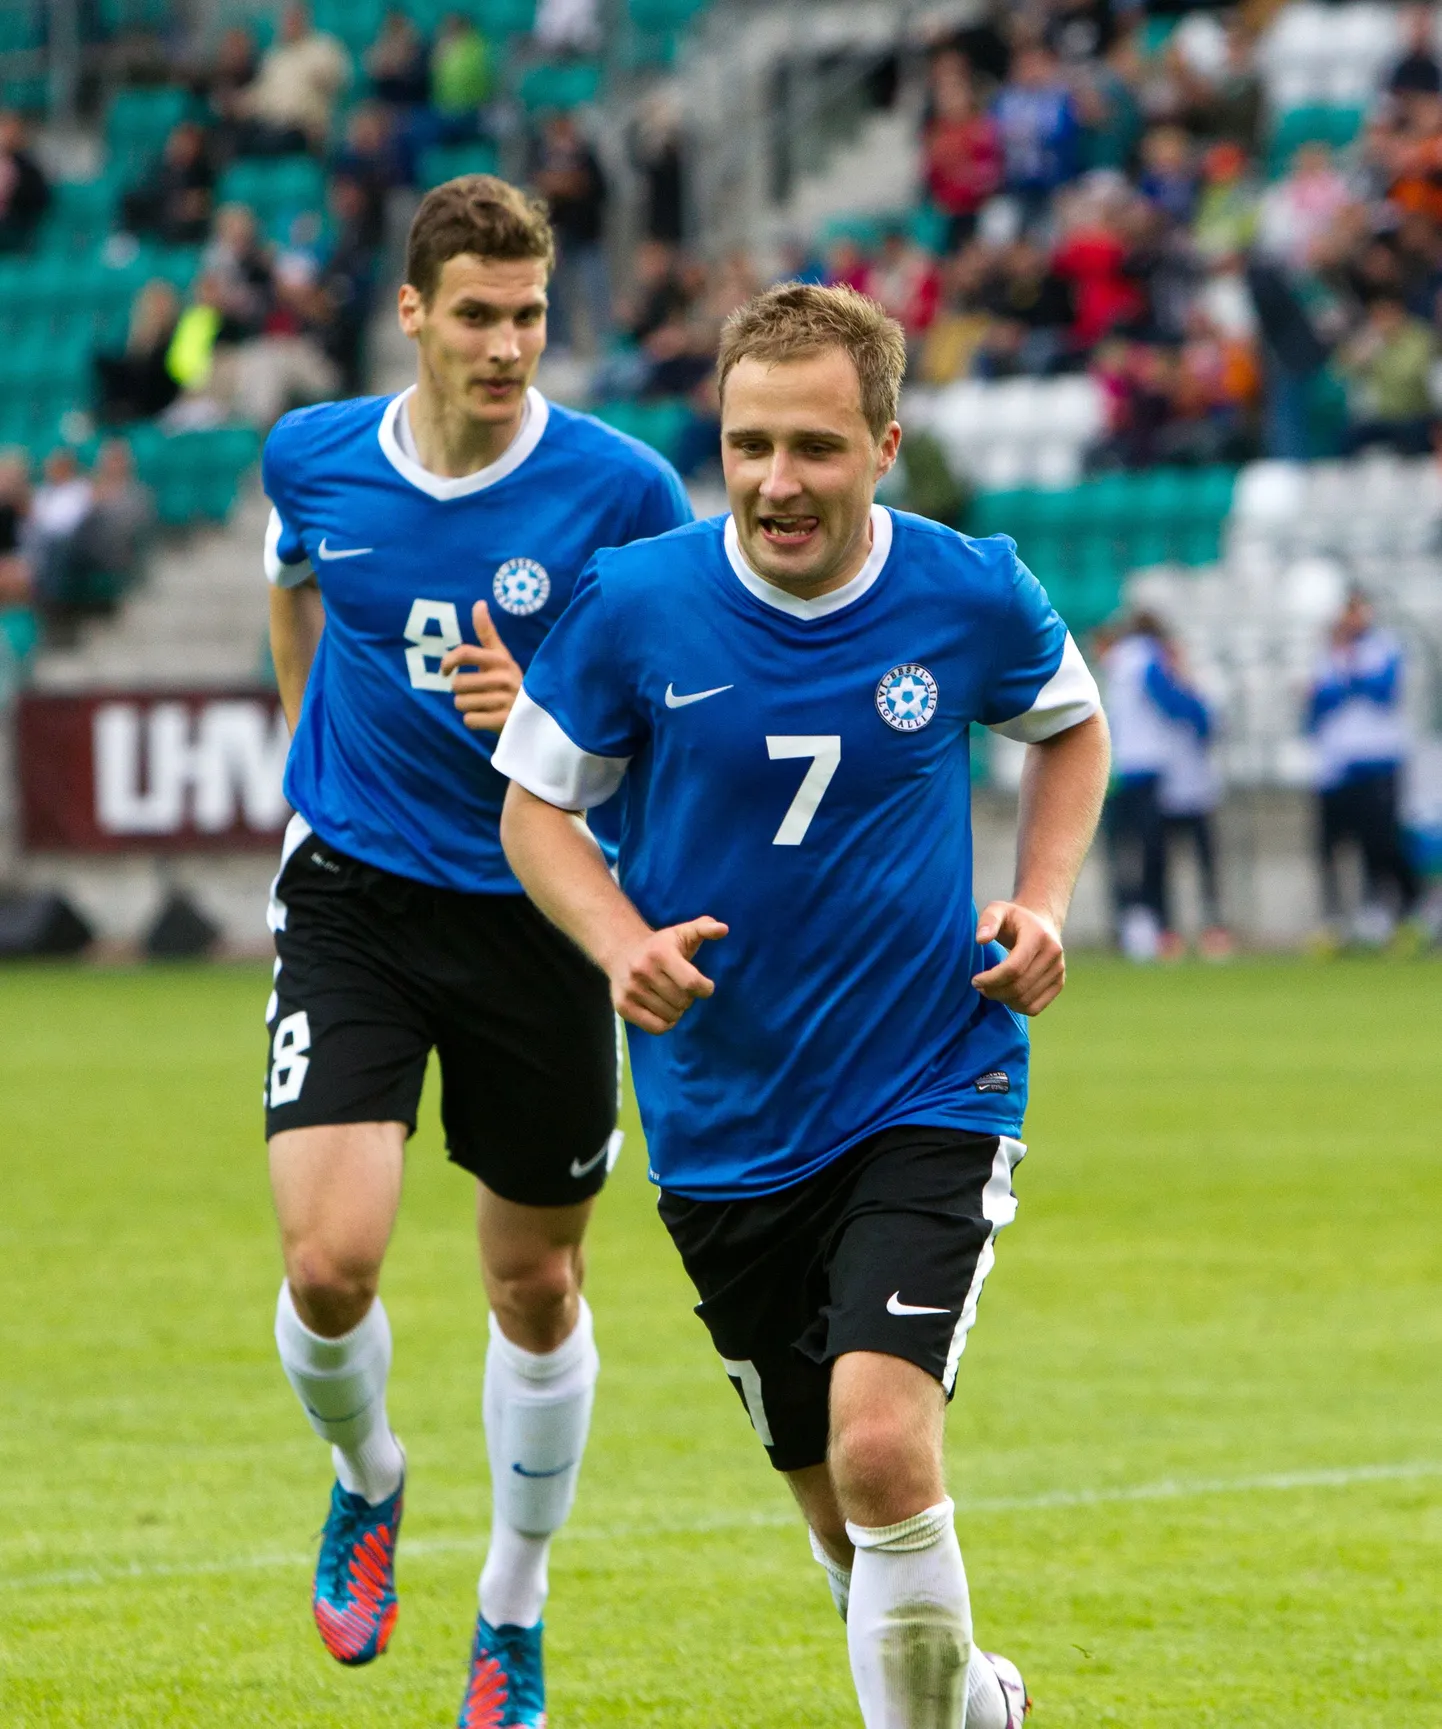 Eesti ja Kõrgõzstani jalgpallikoondised mängisid 1:1 viiki.